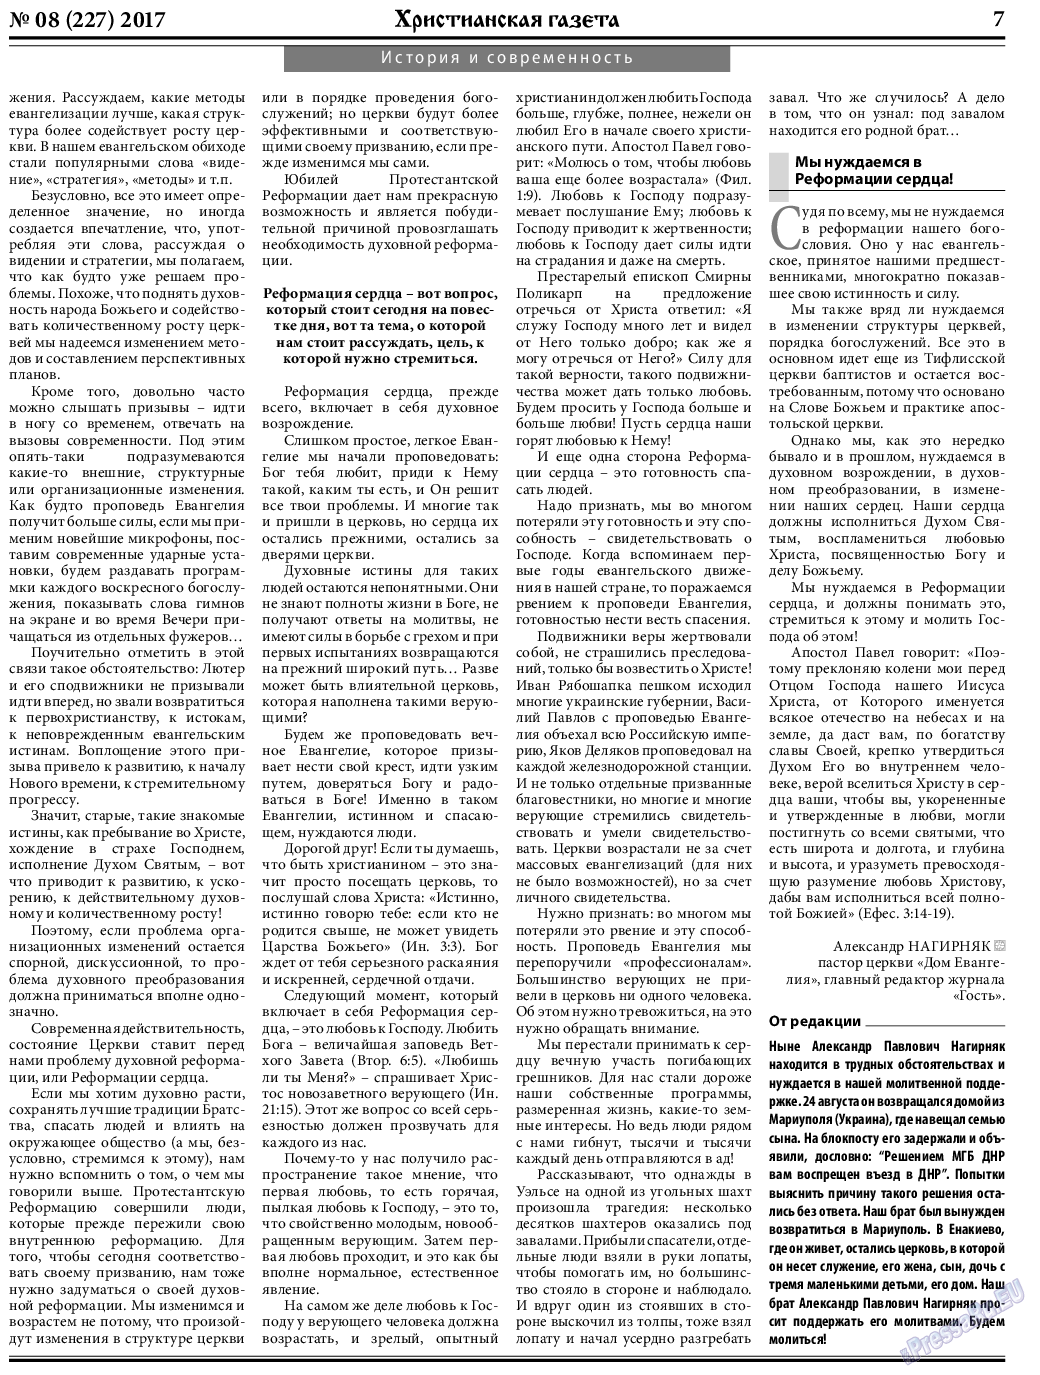 Христианская газета, газета. 2017 №9 стр.7